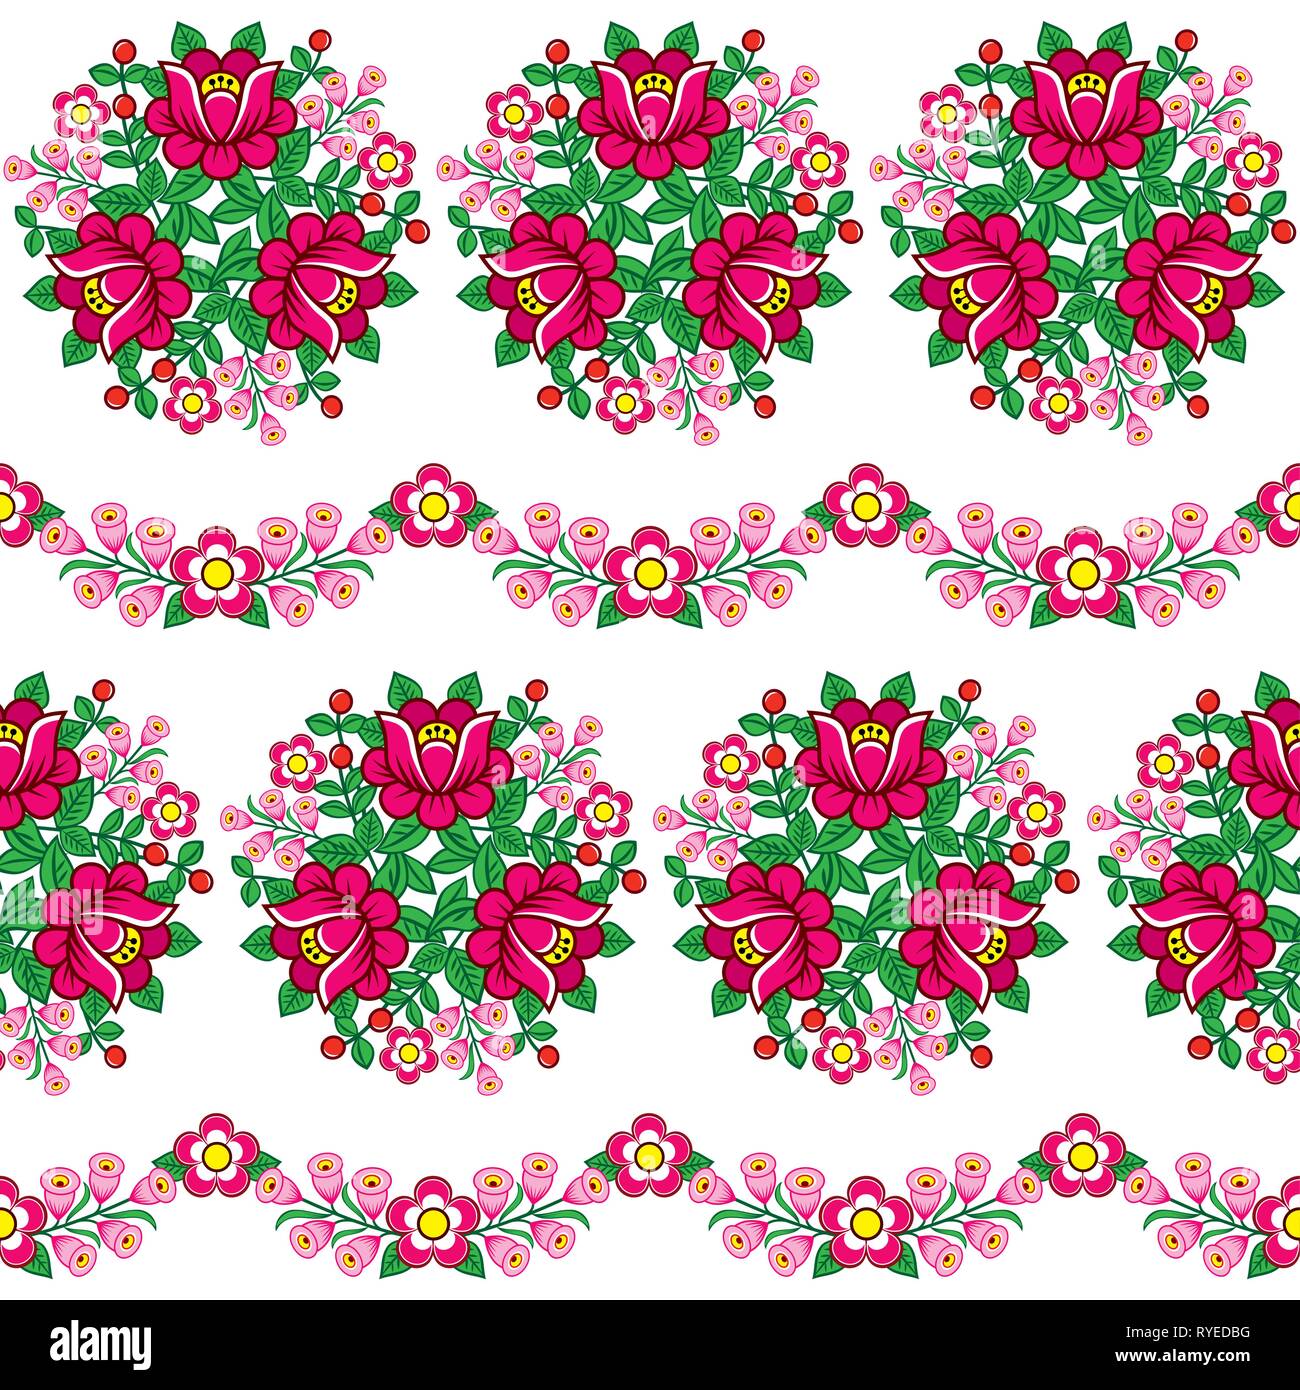 L'art populaire polonais floral Seamless vector pattern, mignon ornements traditionnels avec des fleurs de Zalipie, Pologne - design textile, papier peint Illustration de Vecteur